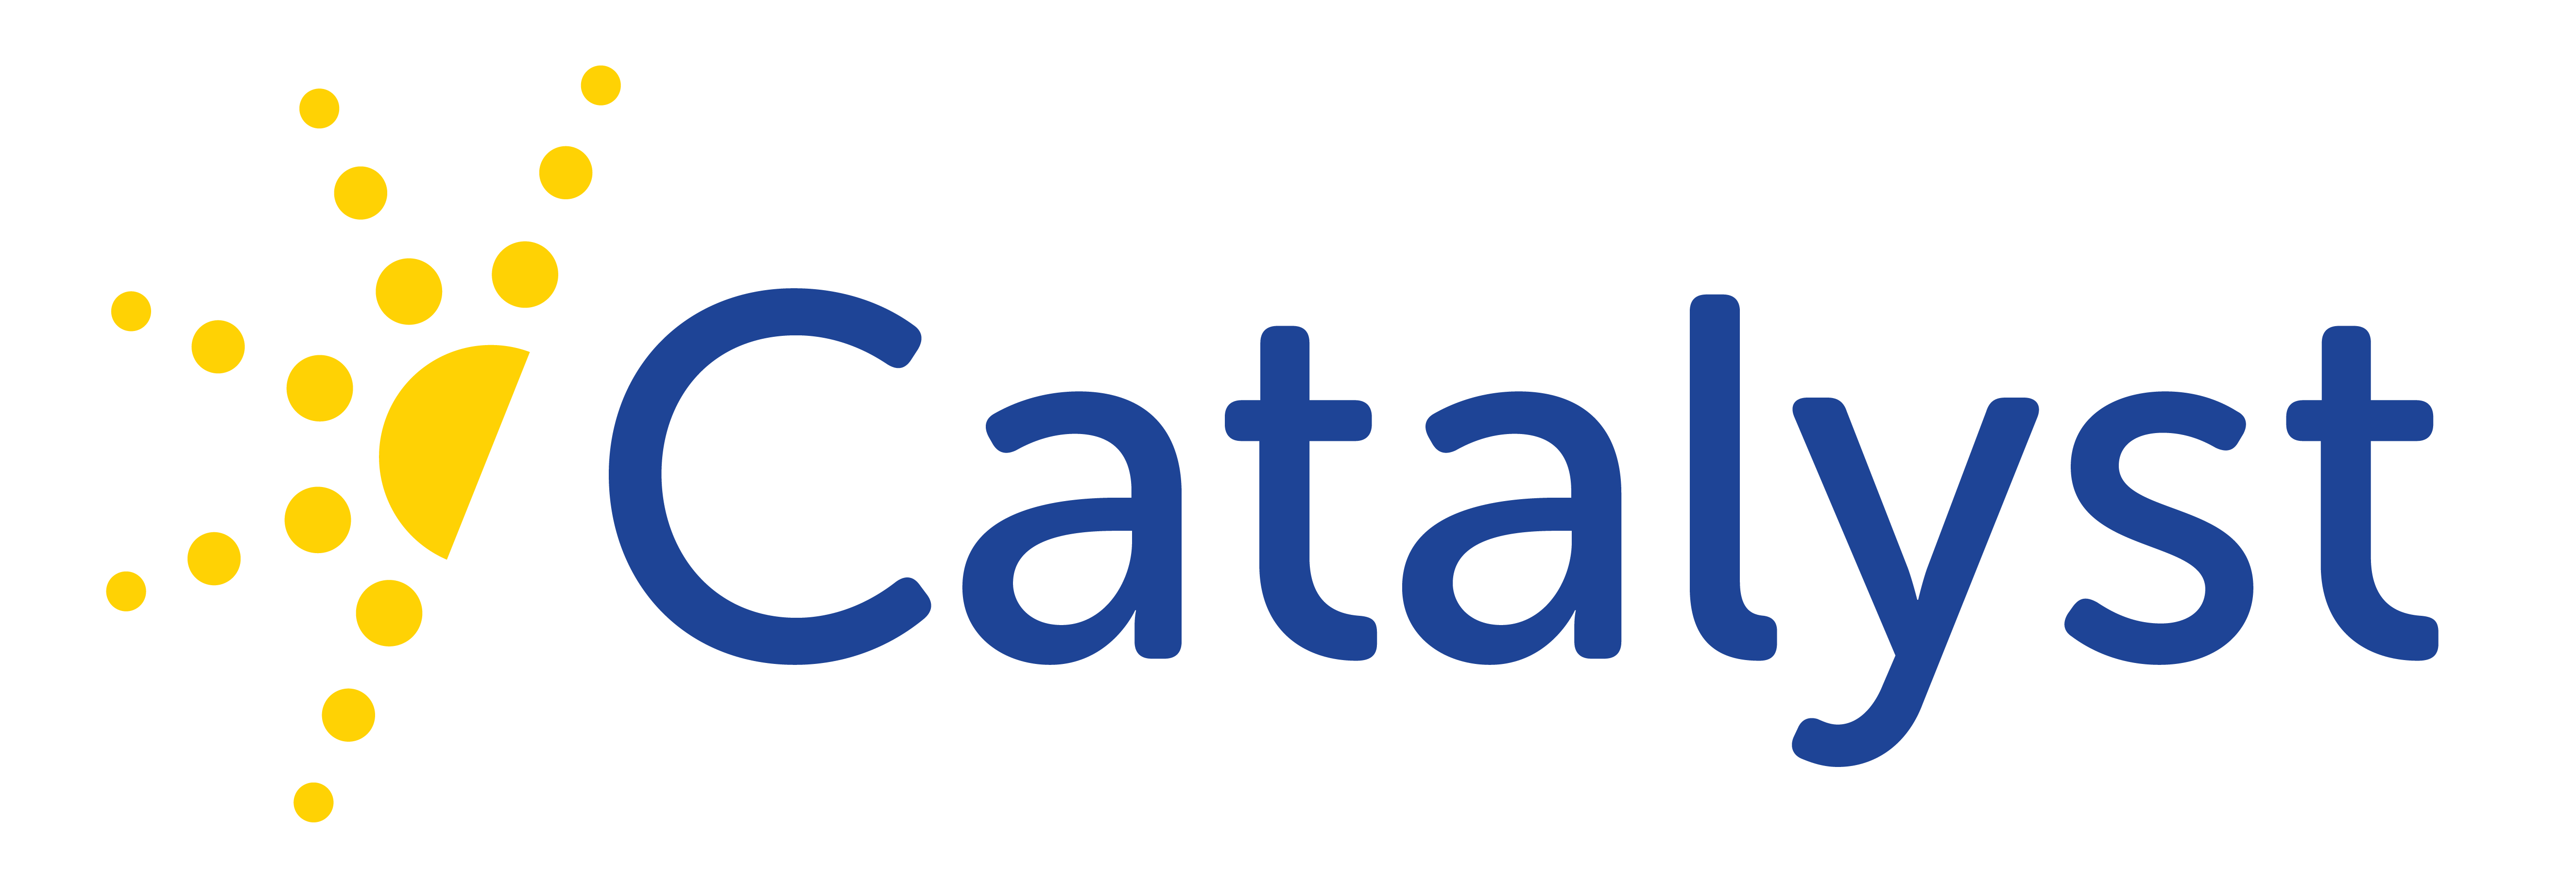 Catalyst Logo - Catalyst Logos